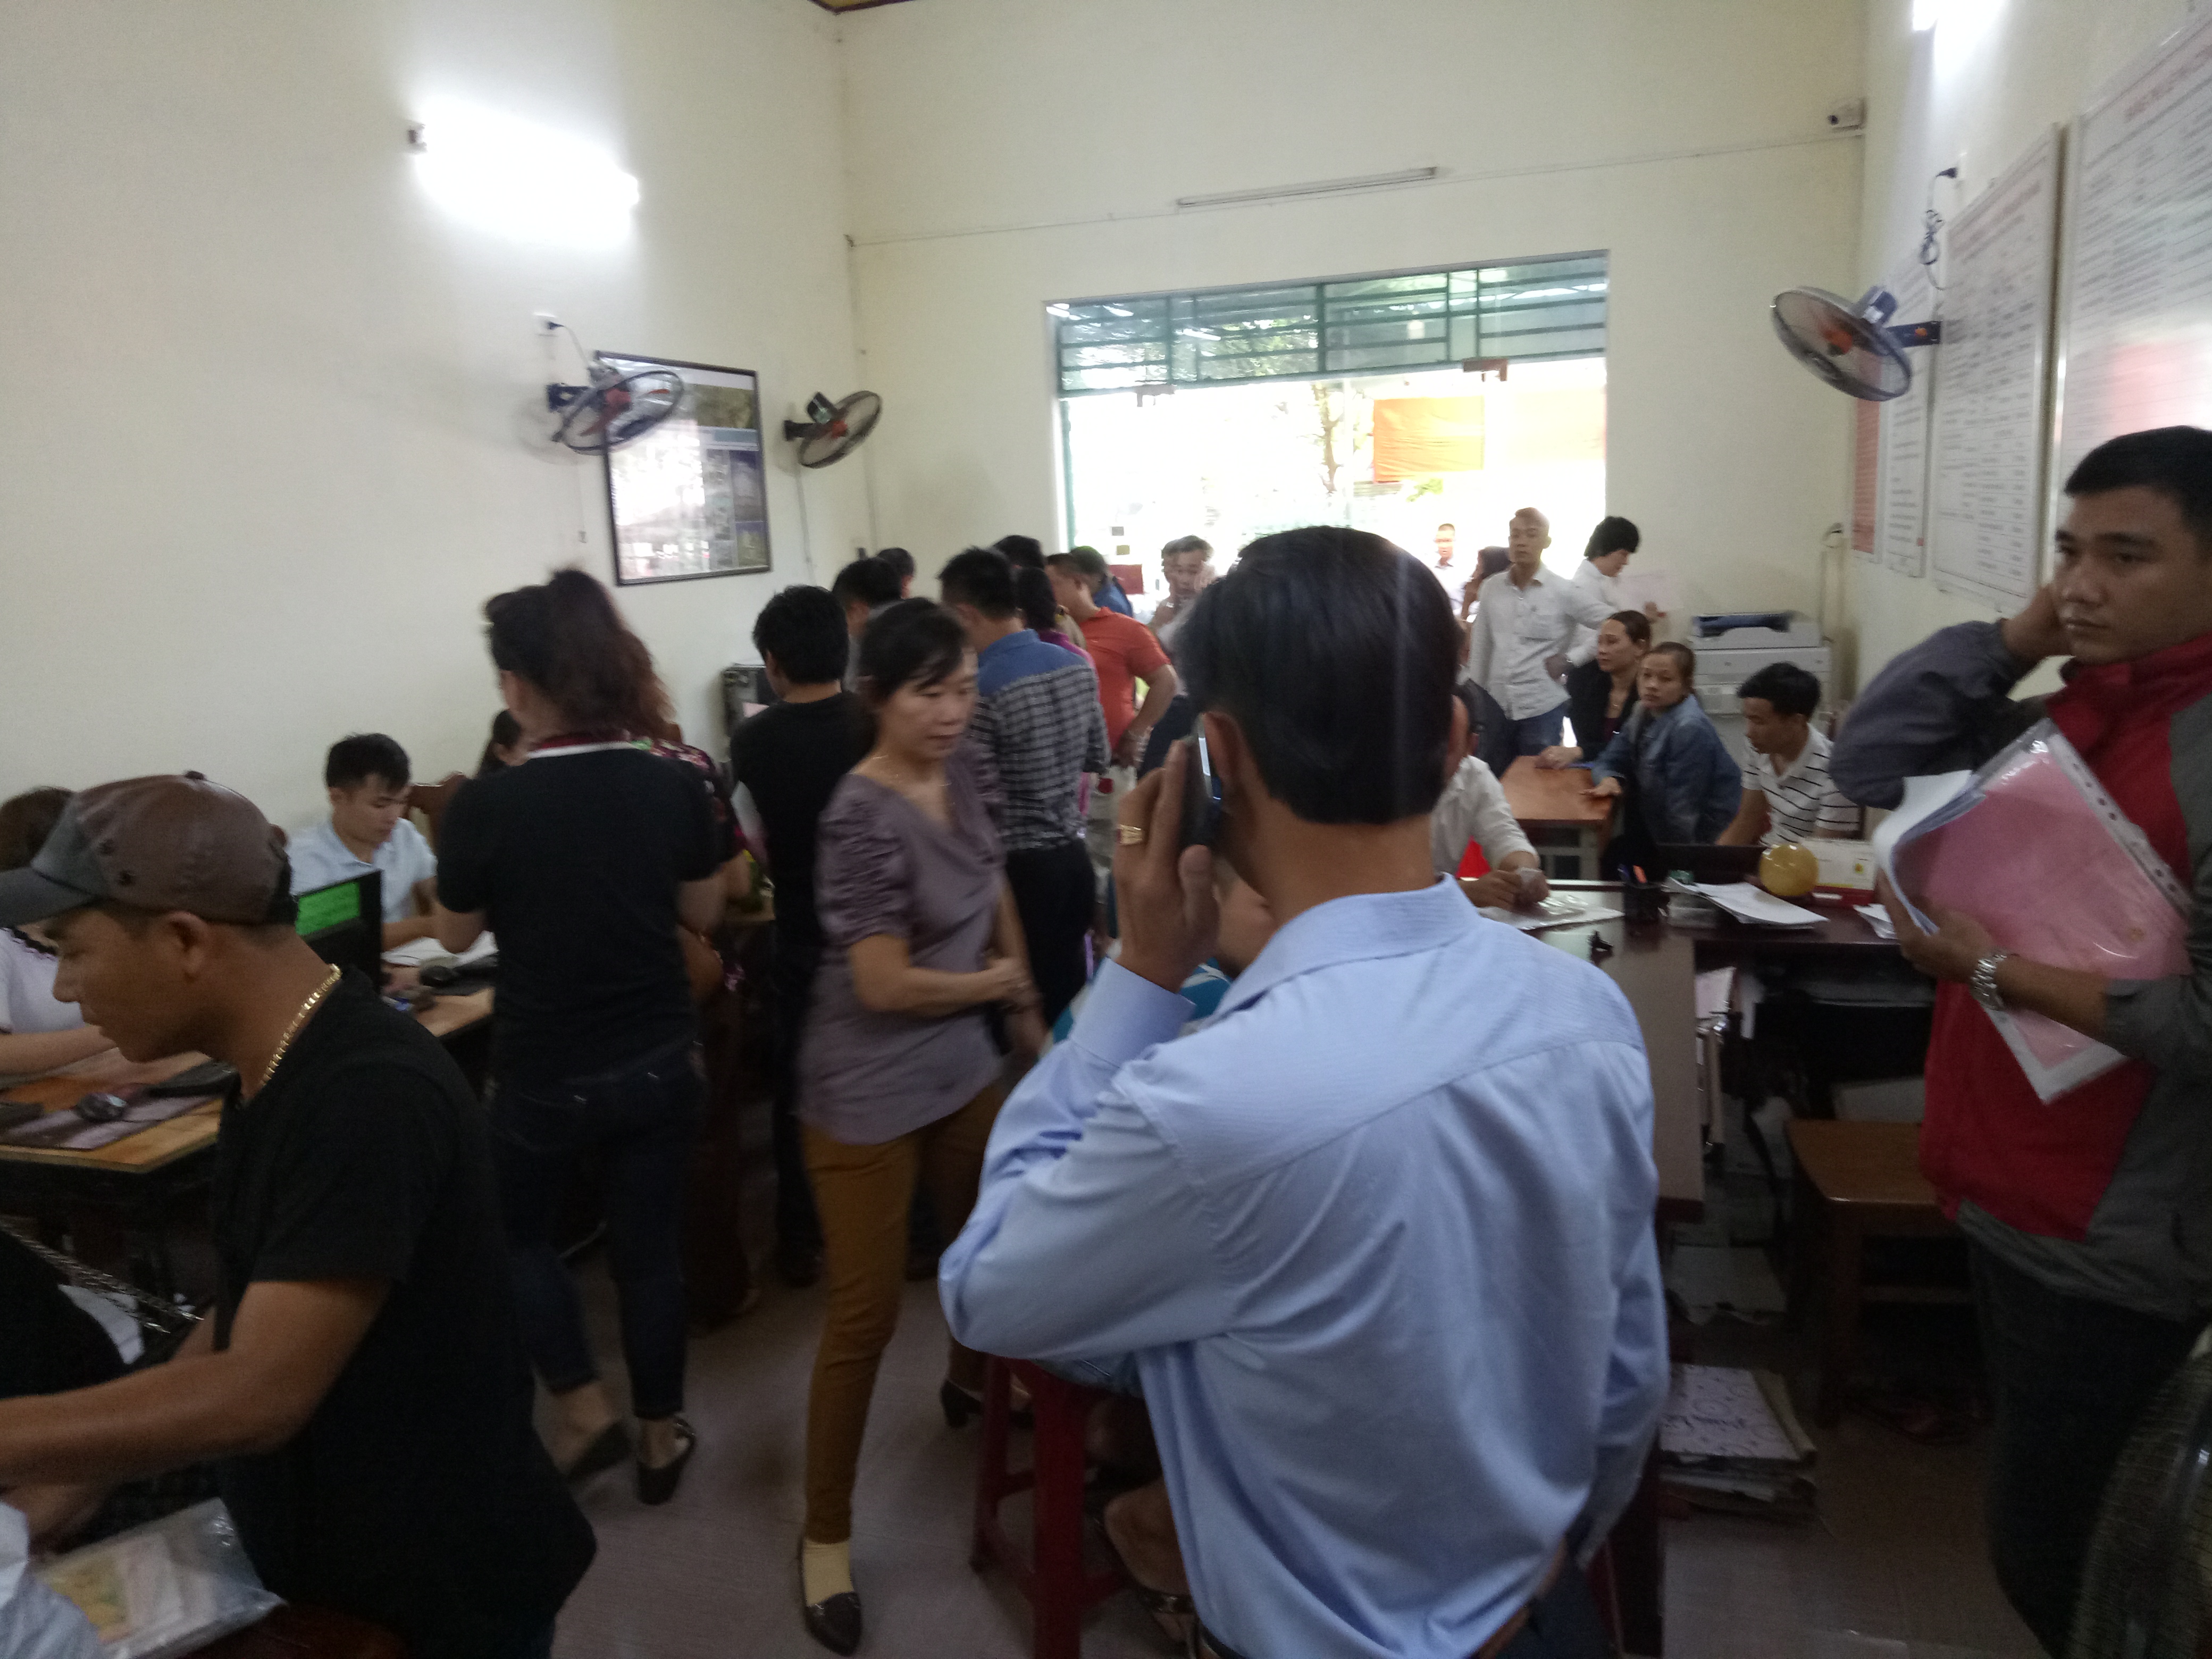 Đà Nẵng: Chính quyền địa phương lên tiếng cảnh báo người dân trước tình trạng sốt đất ảo